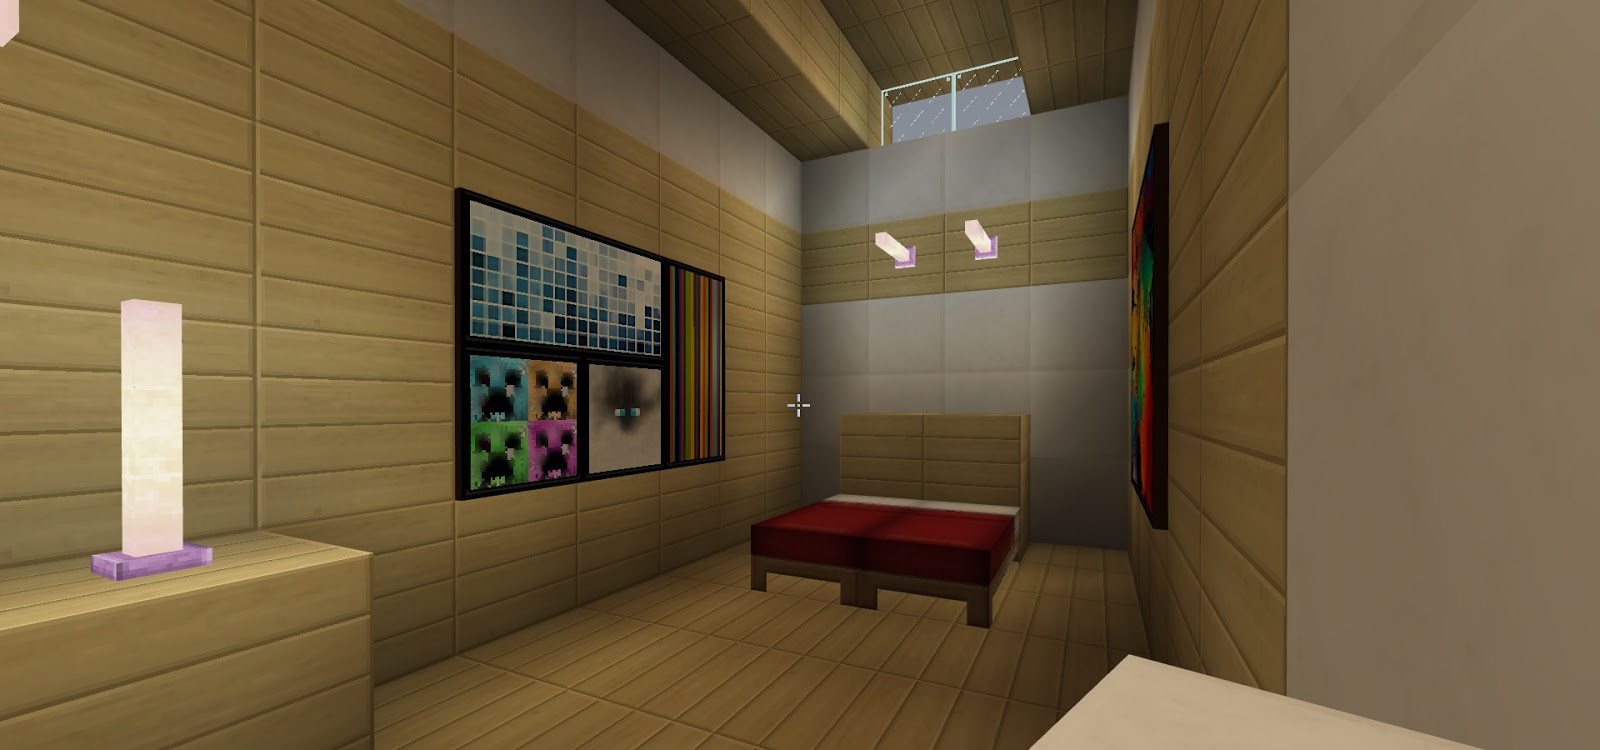 Amazing Minecraft Interior Decorating Ideas CFM FuelGaming